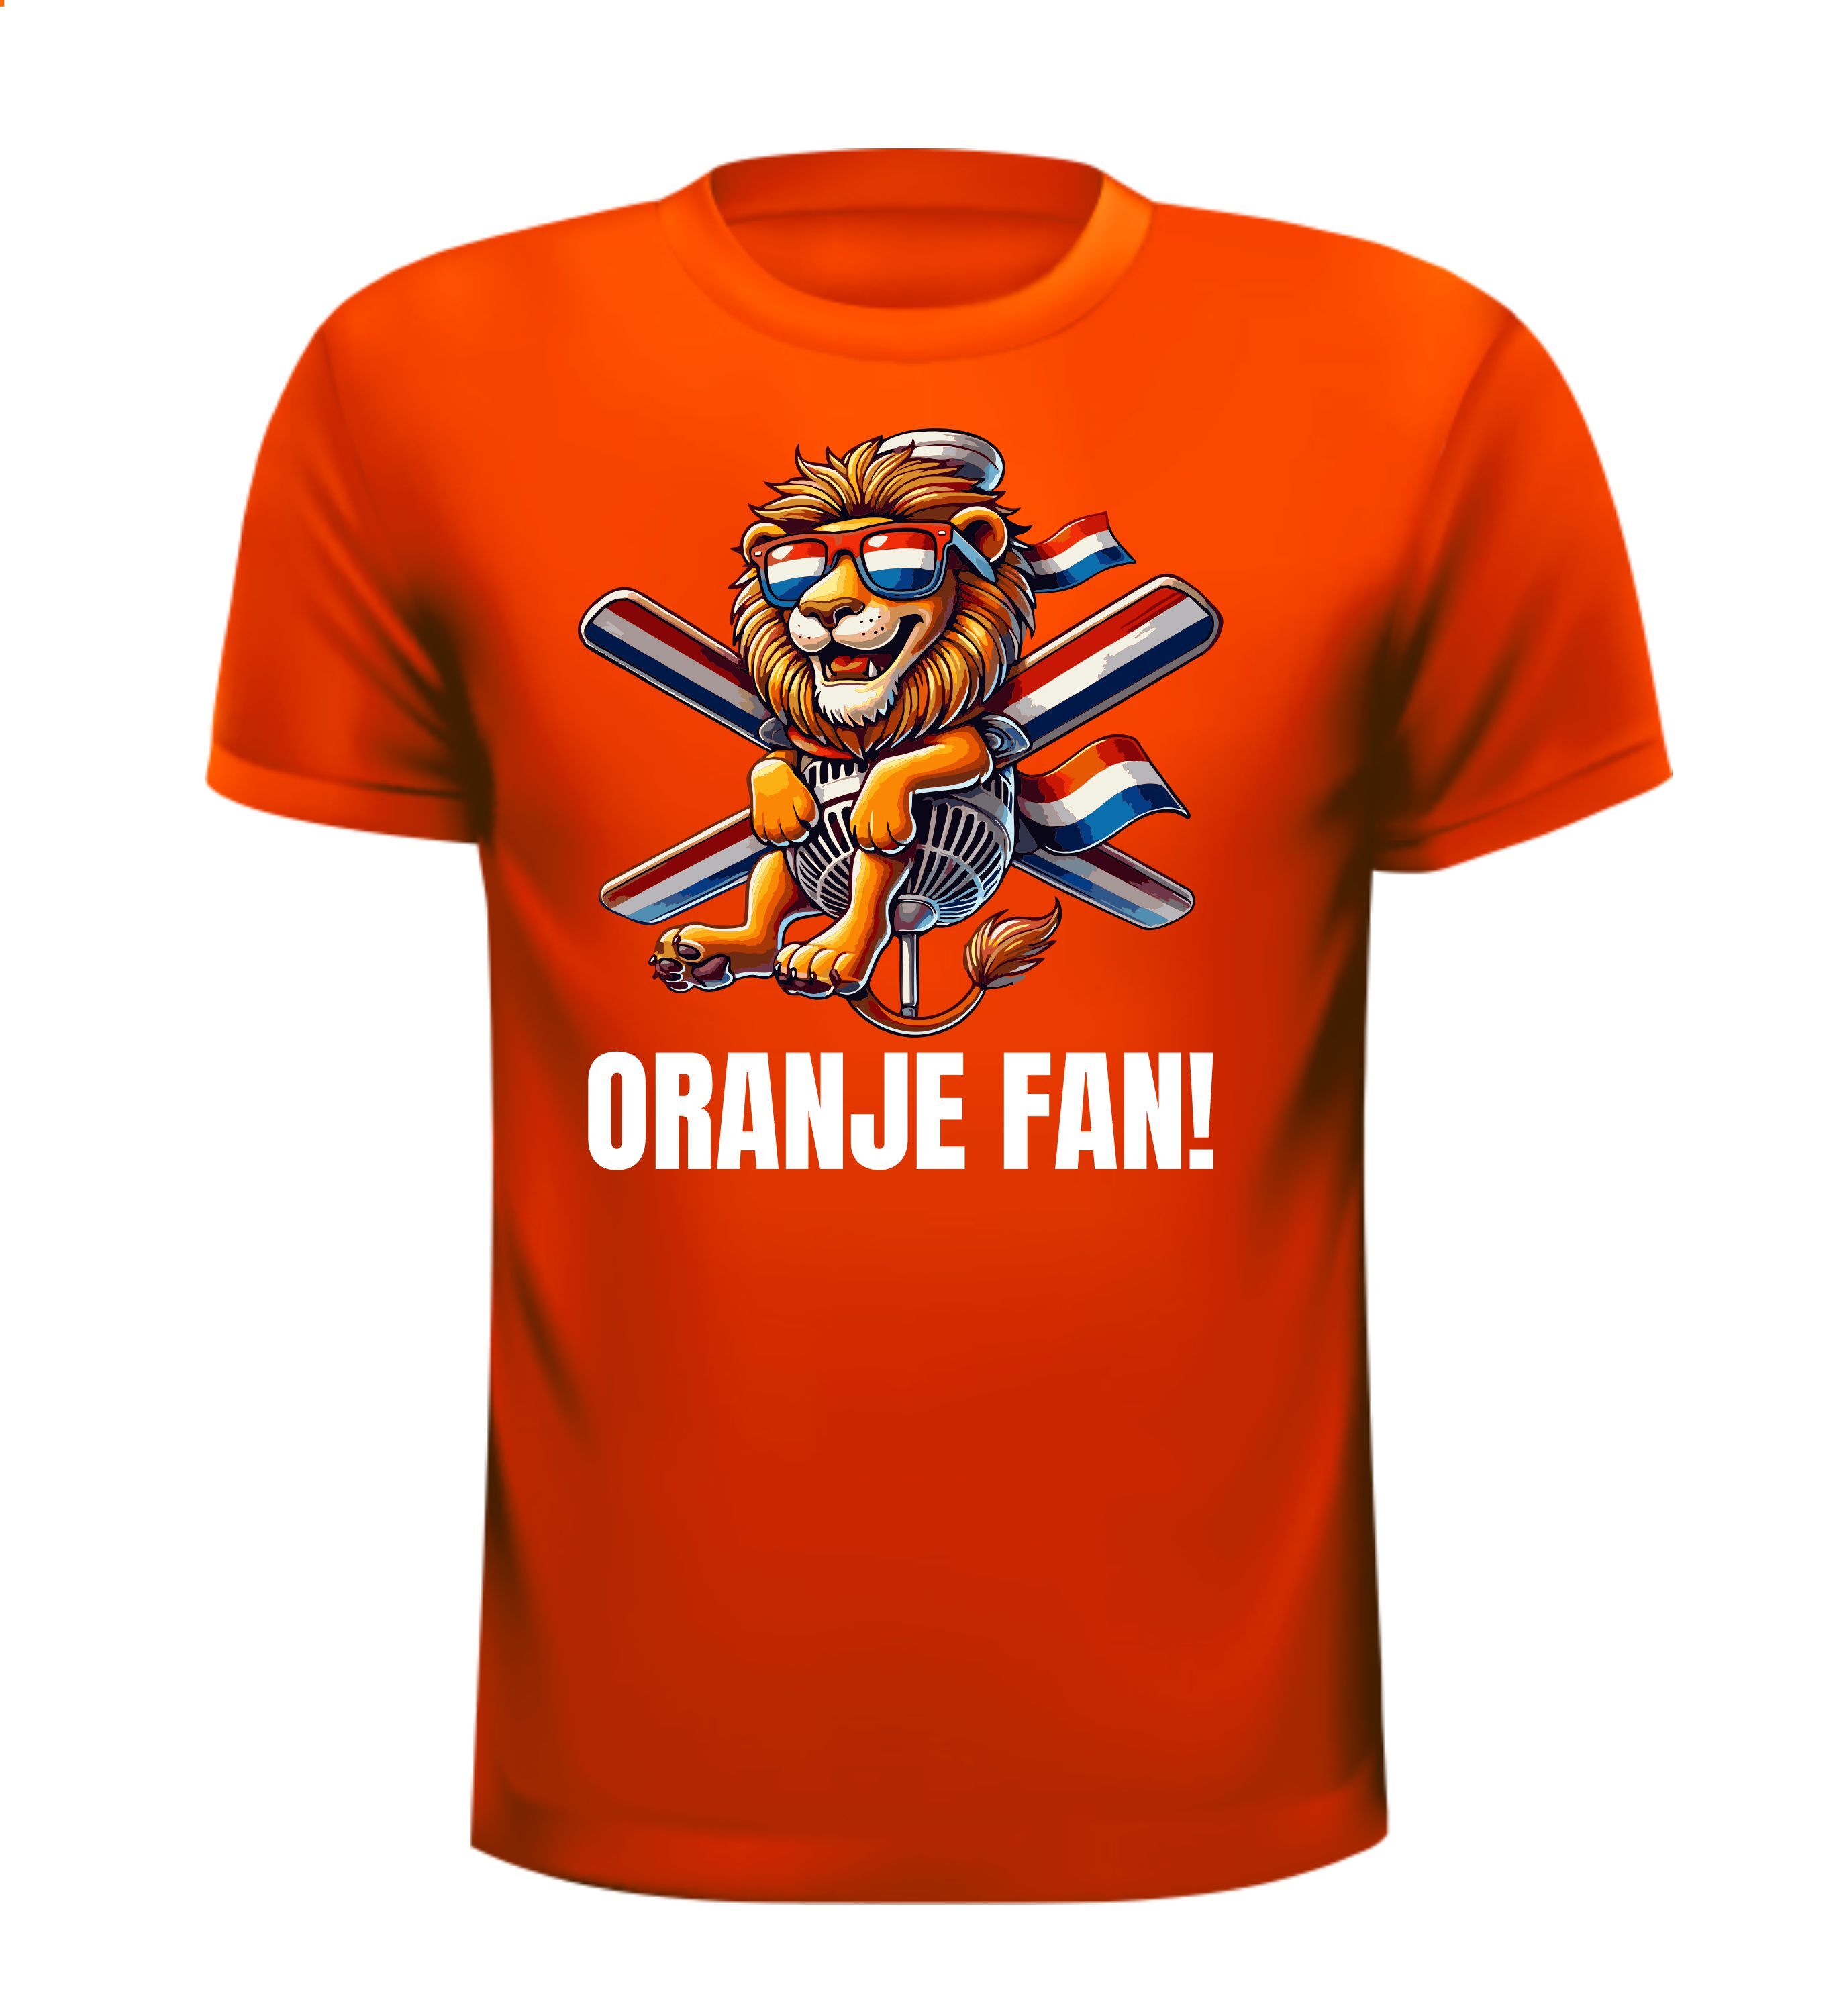 Oranje shirtje voor de oranje fan